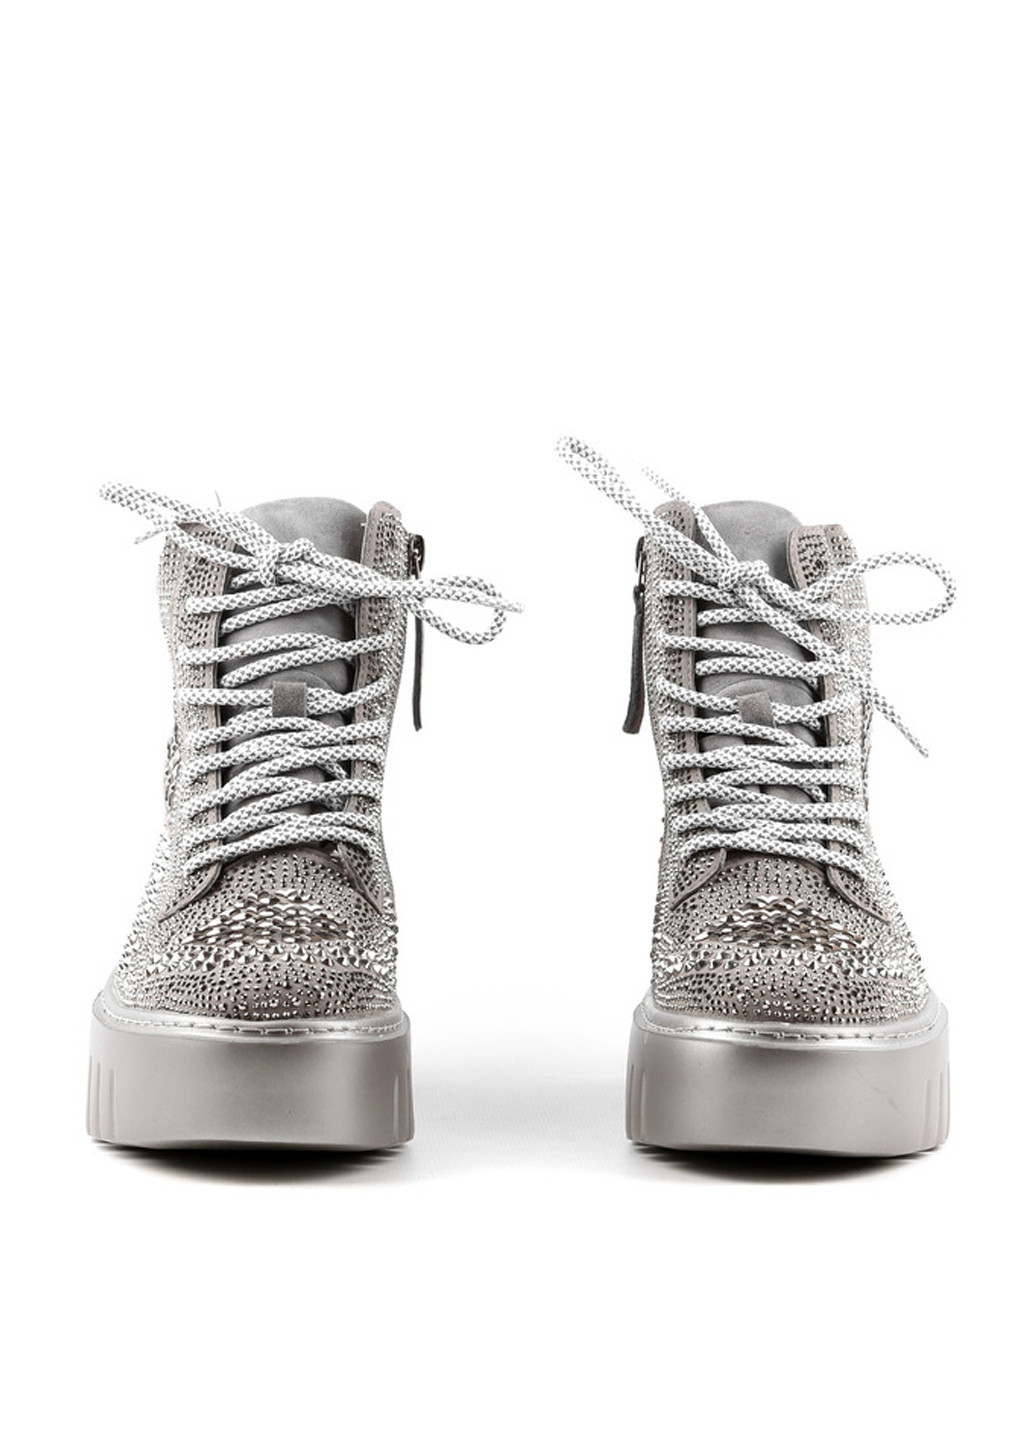 Осенние ботинки сникерсы Le'BERDES со стразами, со шнуровкой из натуральной замши